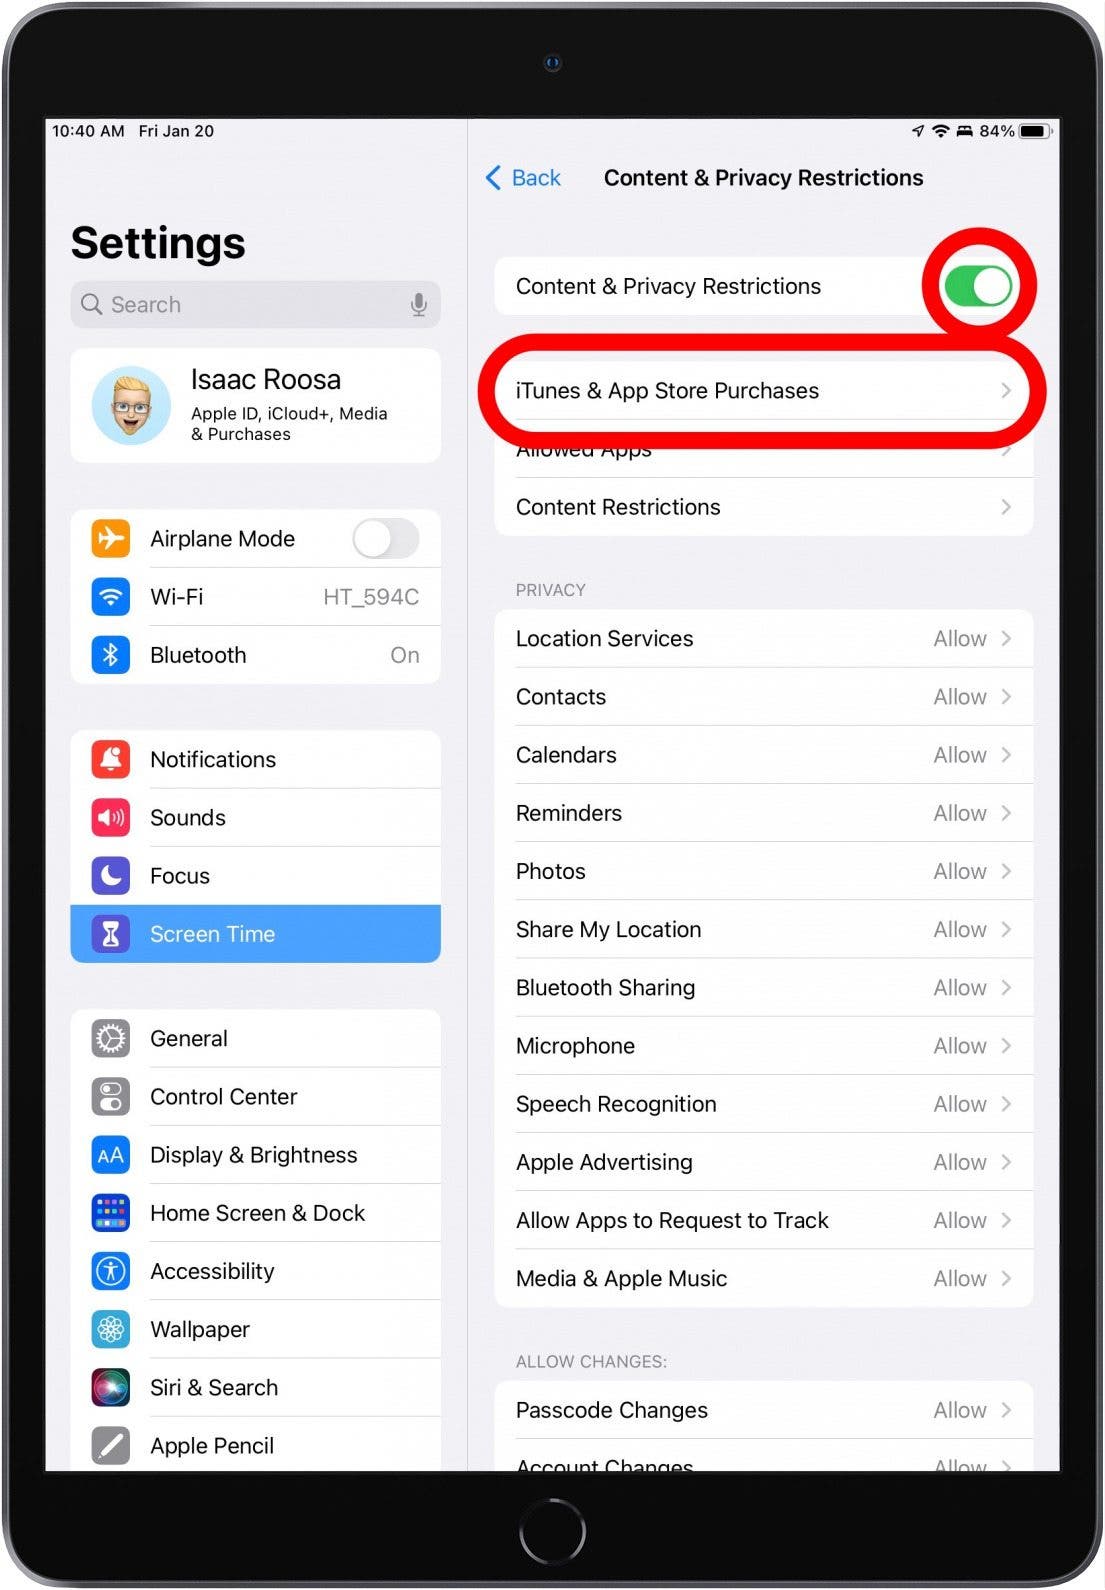 Si las Restricciones de contenido y privacidad están activadas (verde), podrá tocar Compras en iTunes y App Store.